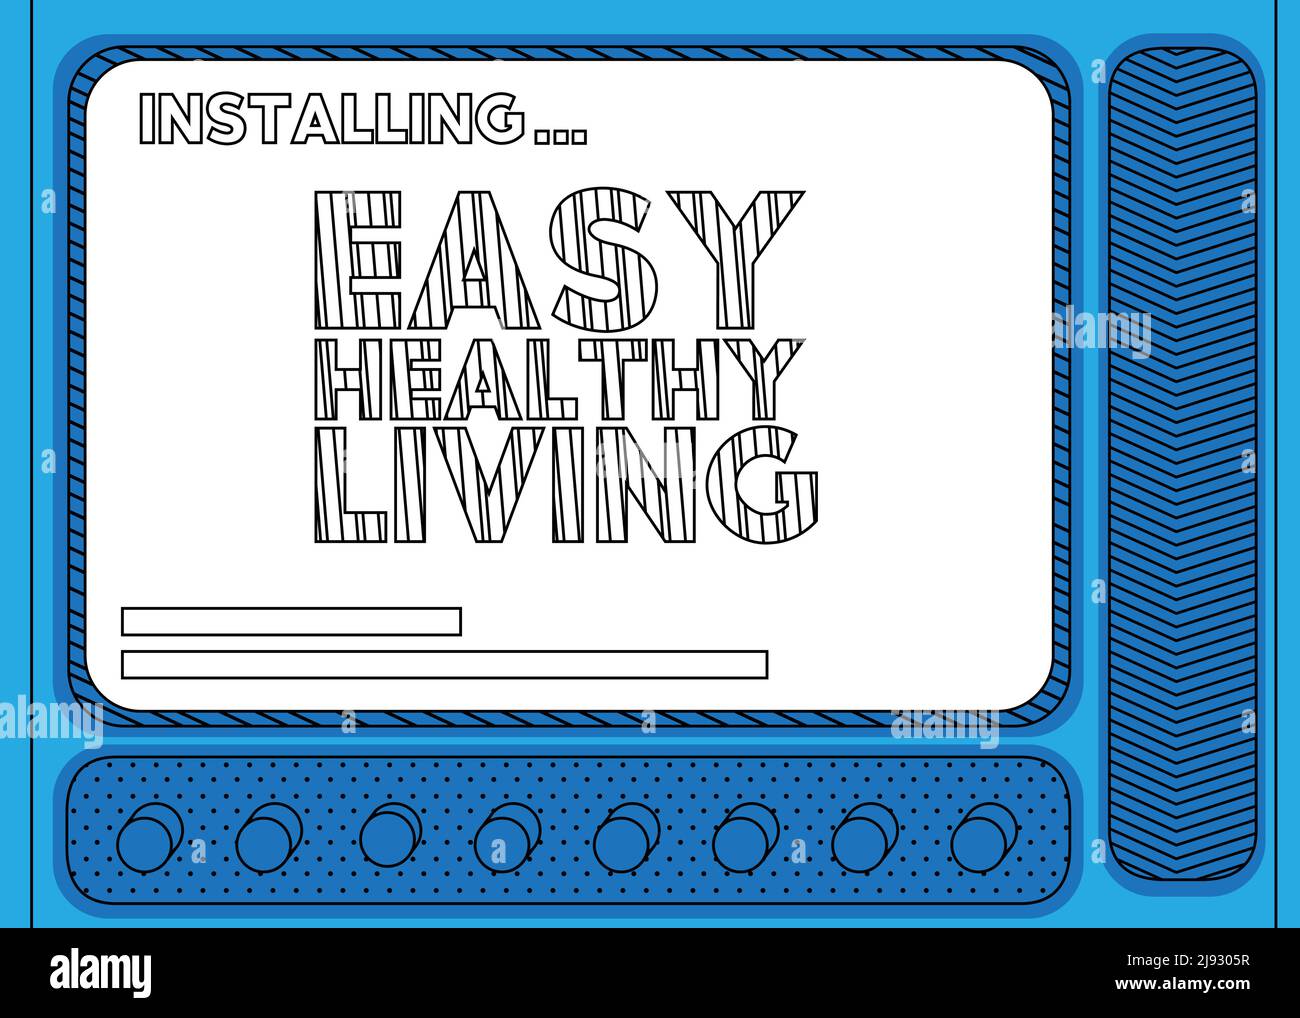 Computer cartoon con la parola Easy Healthy Living. Messaggio di una schermata che visualizza una finestra di installazione. Illustrazione Vettoriale